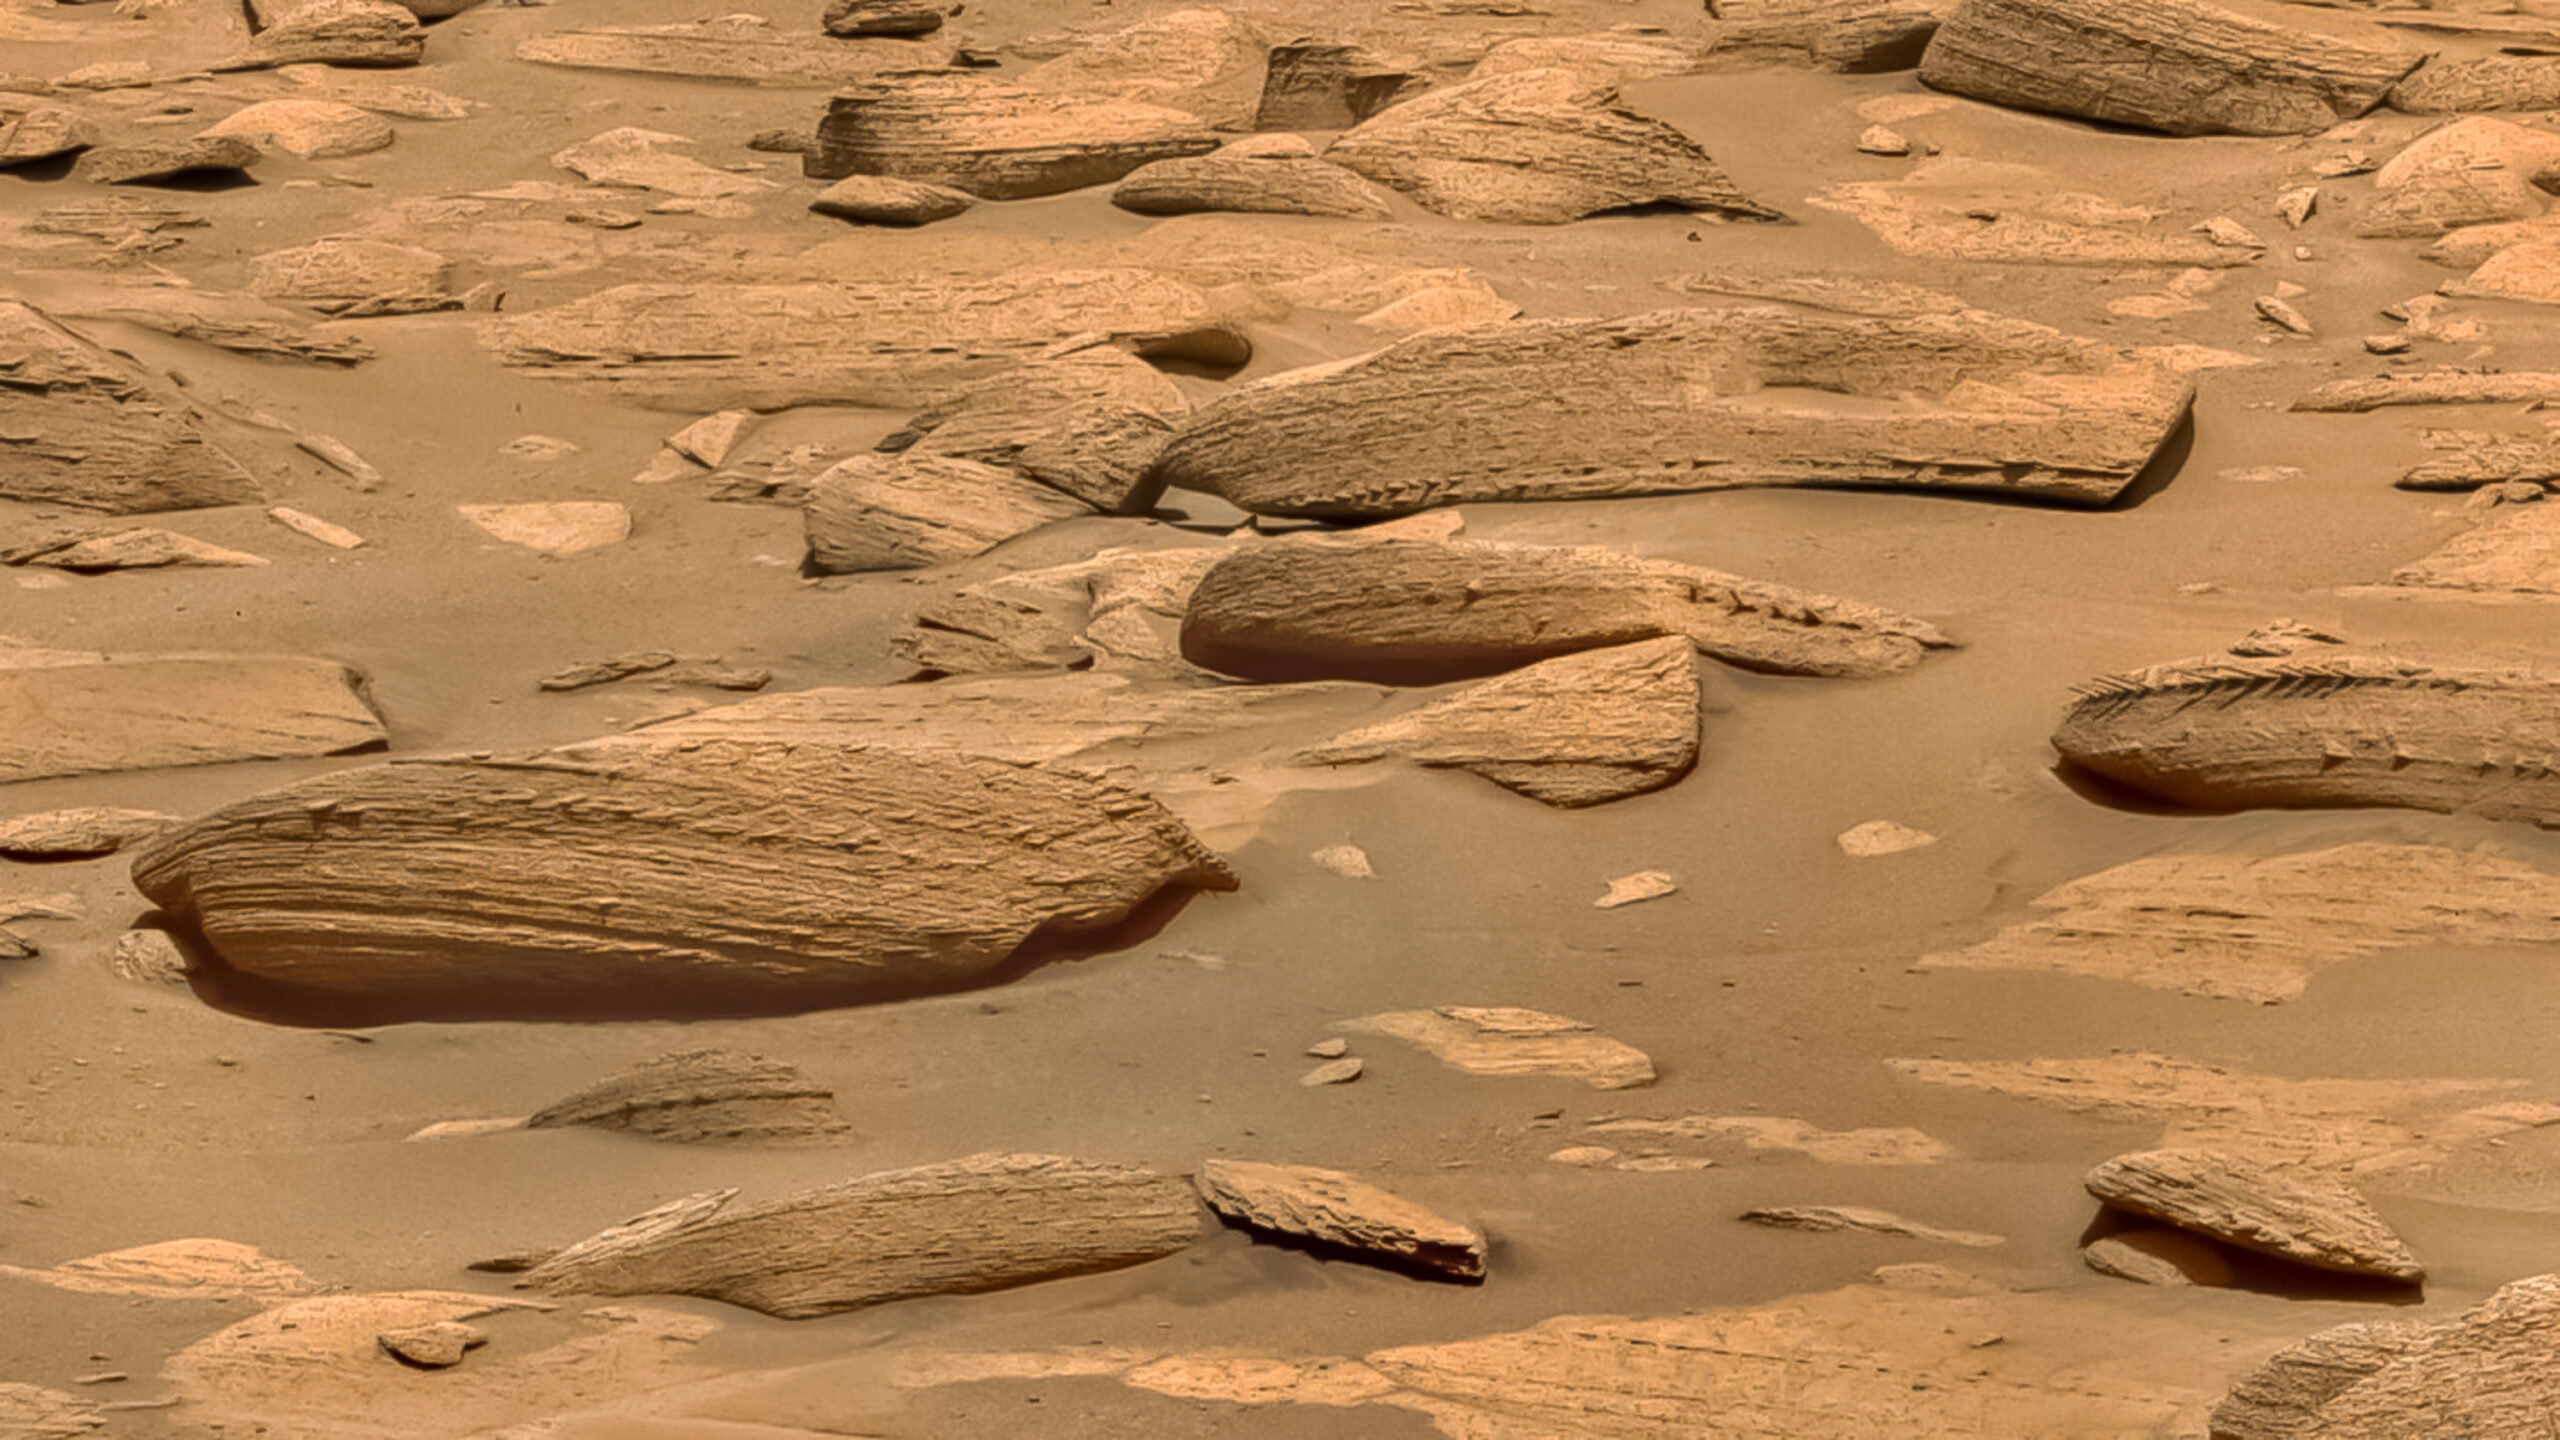 El rover Curiosity de la NASA descubre la roca más extraña de Marte